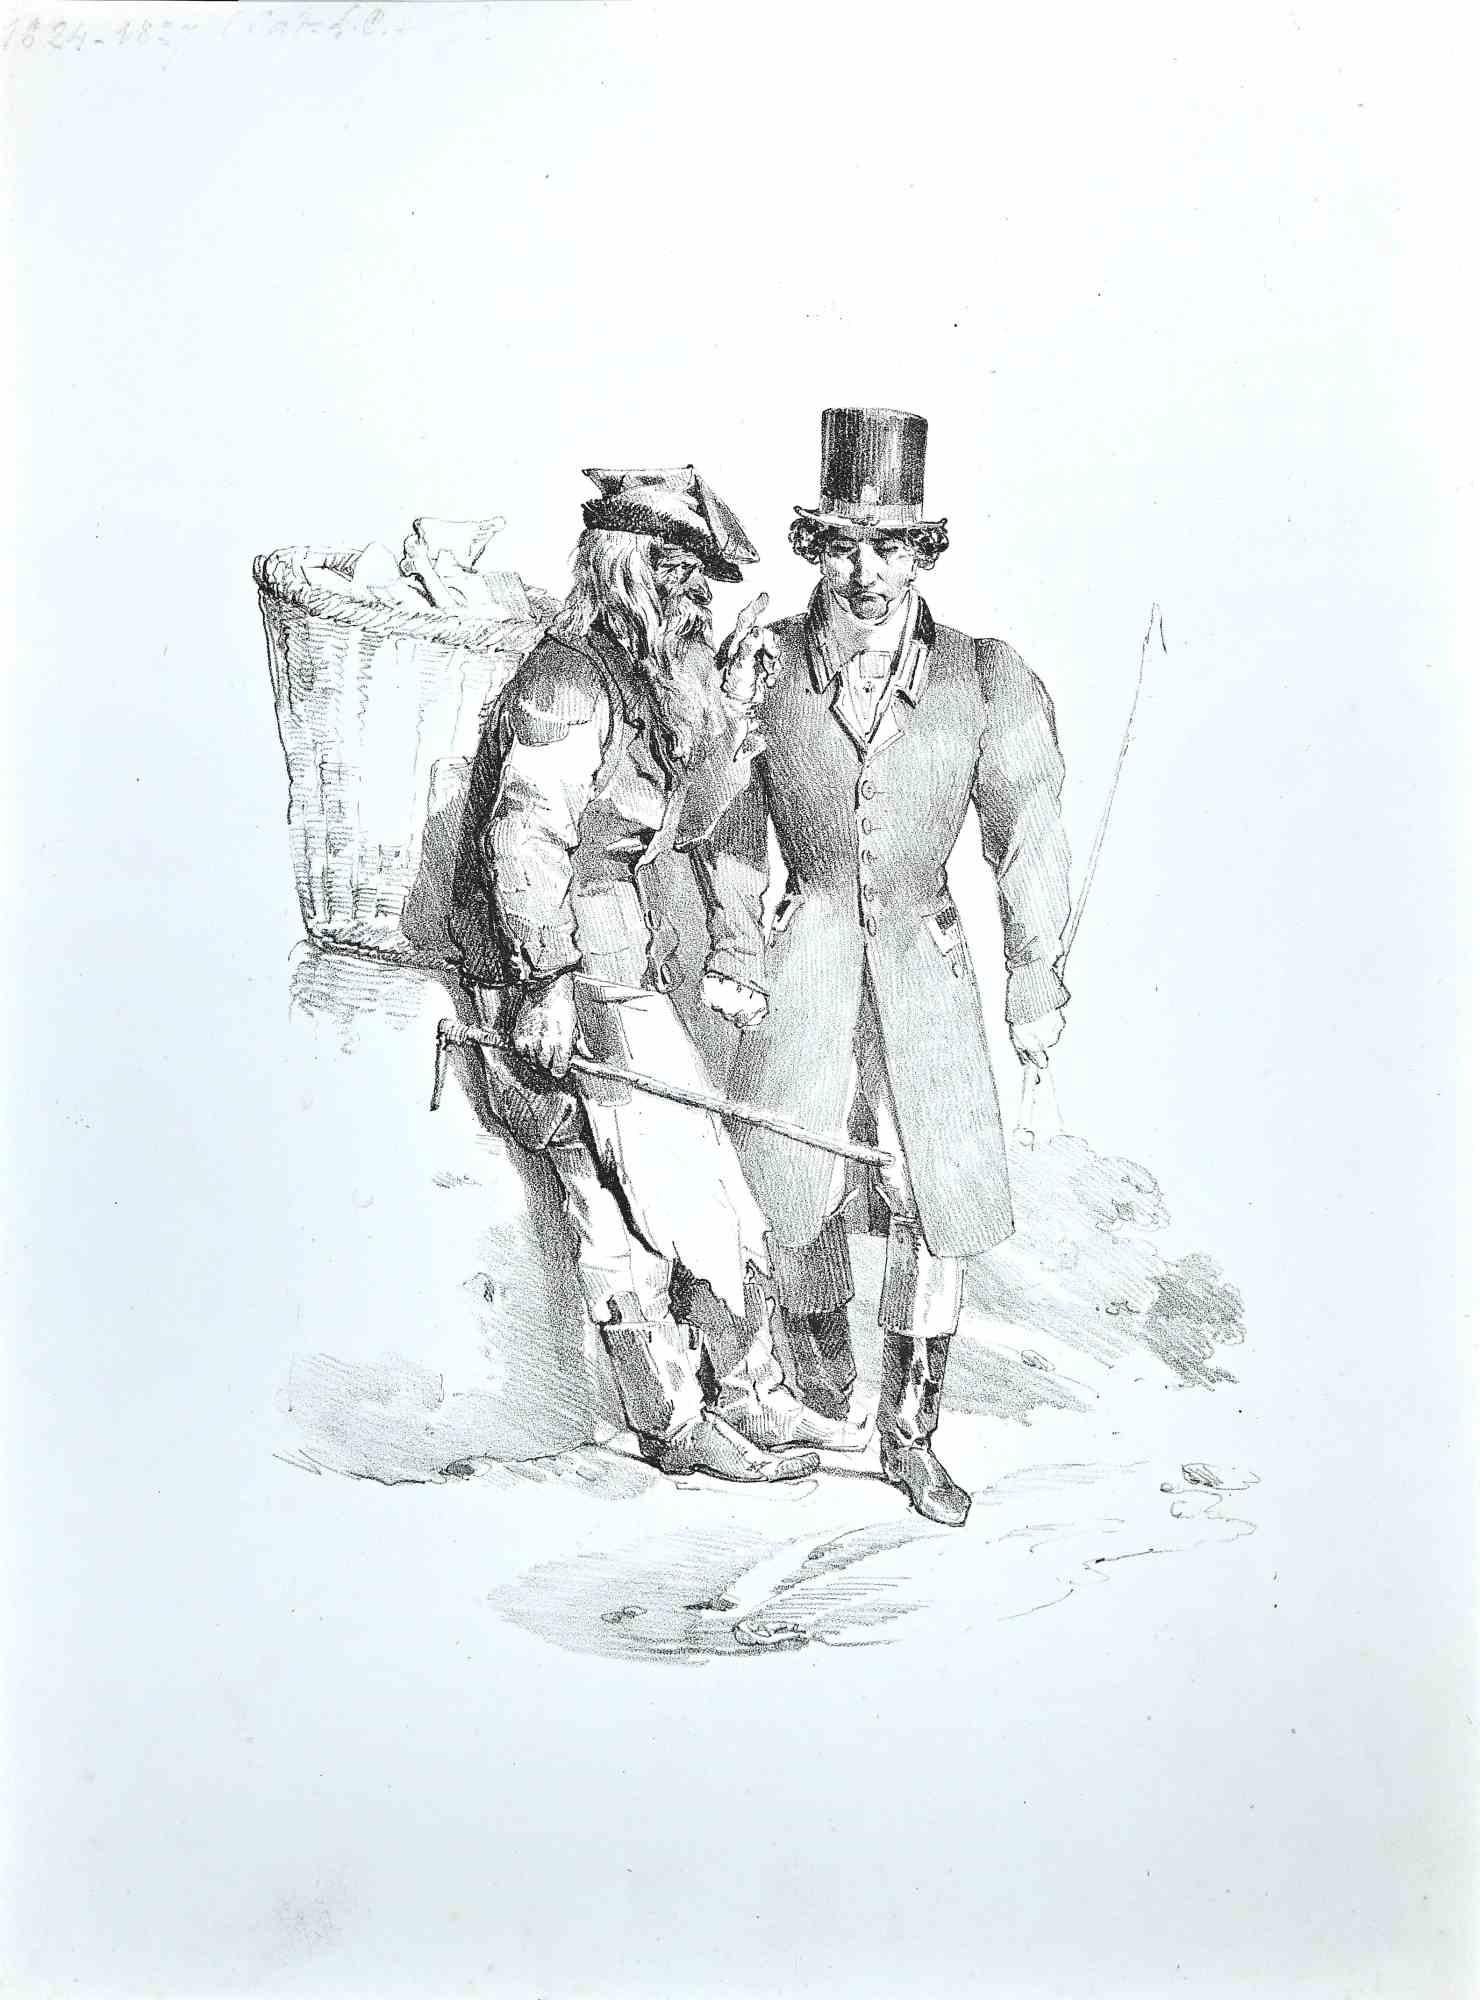 Le Gentleman and the Wayfarer - Gravure originale, fin du XIXe siècle